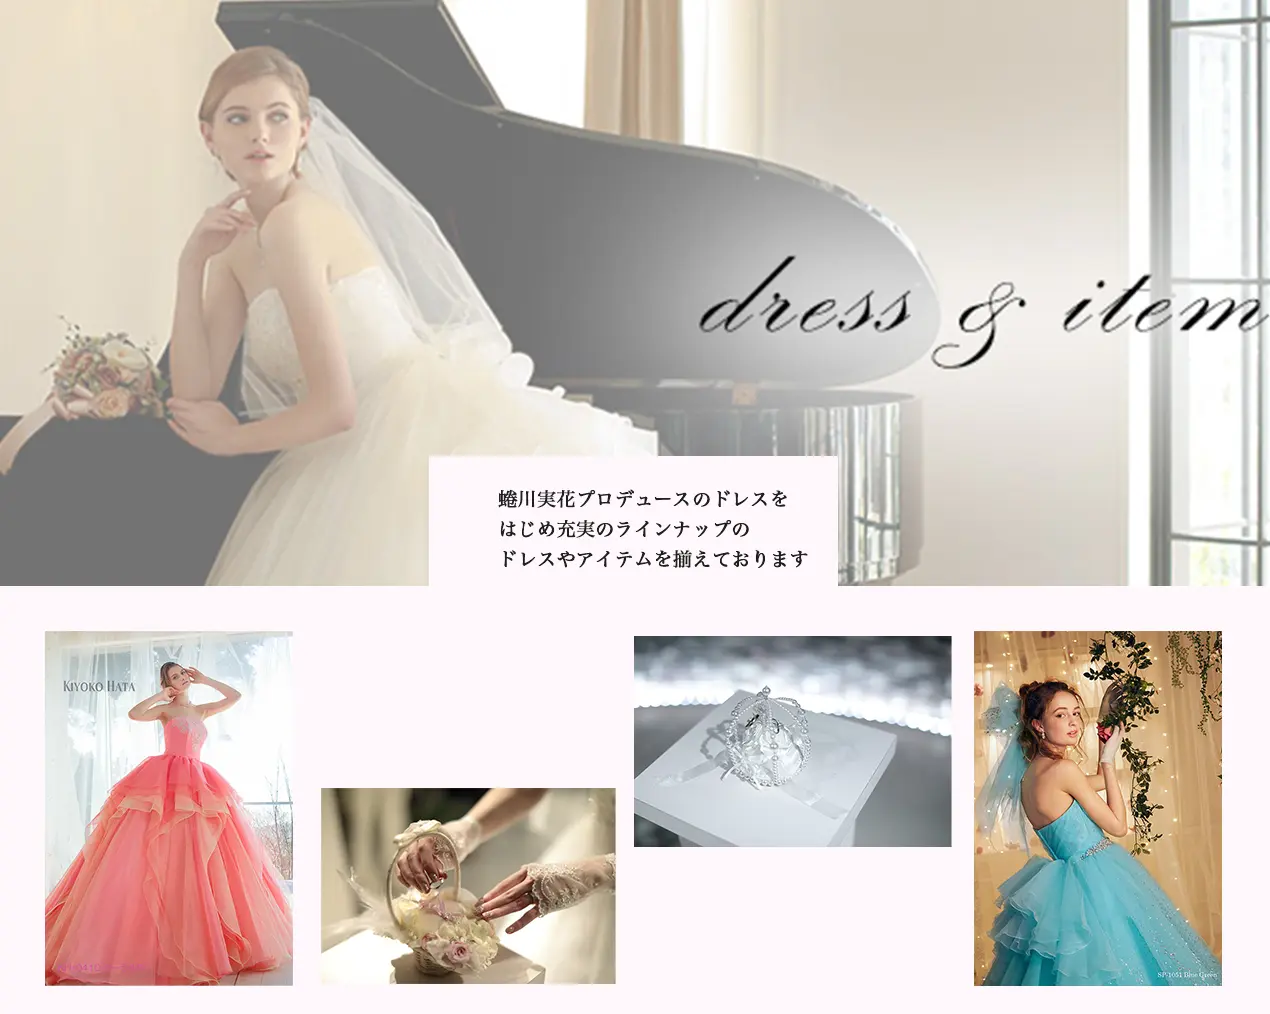 蜷川実花プロデュースのドレスを はじめ充実のラインナップの ドレスやアイテムを揃えております